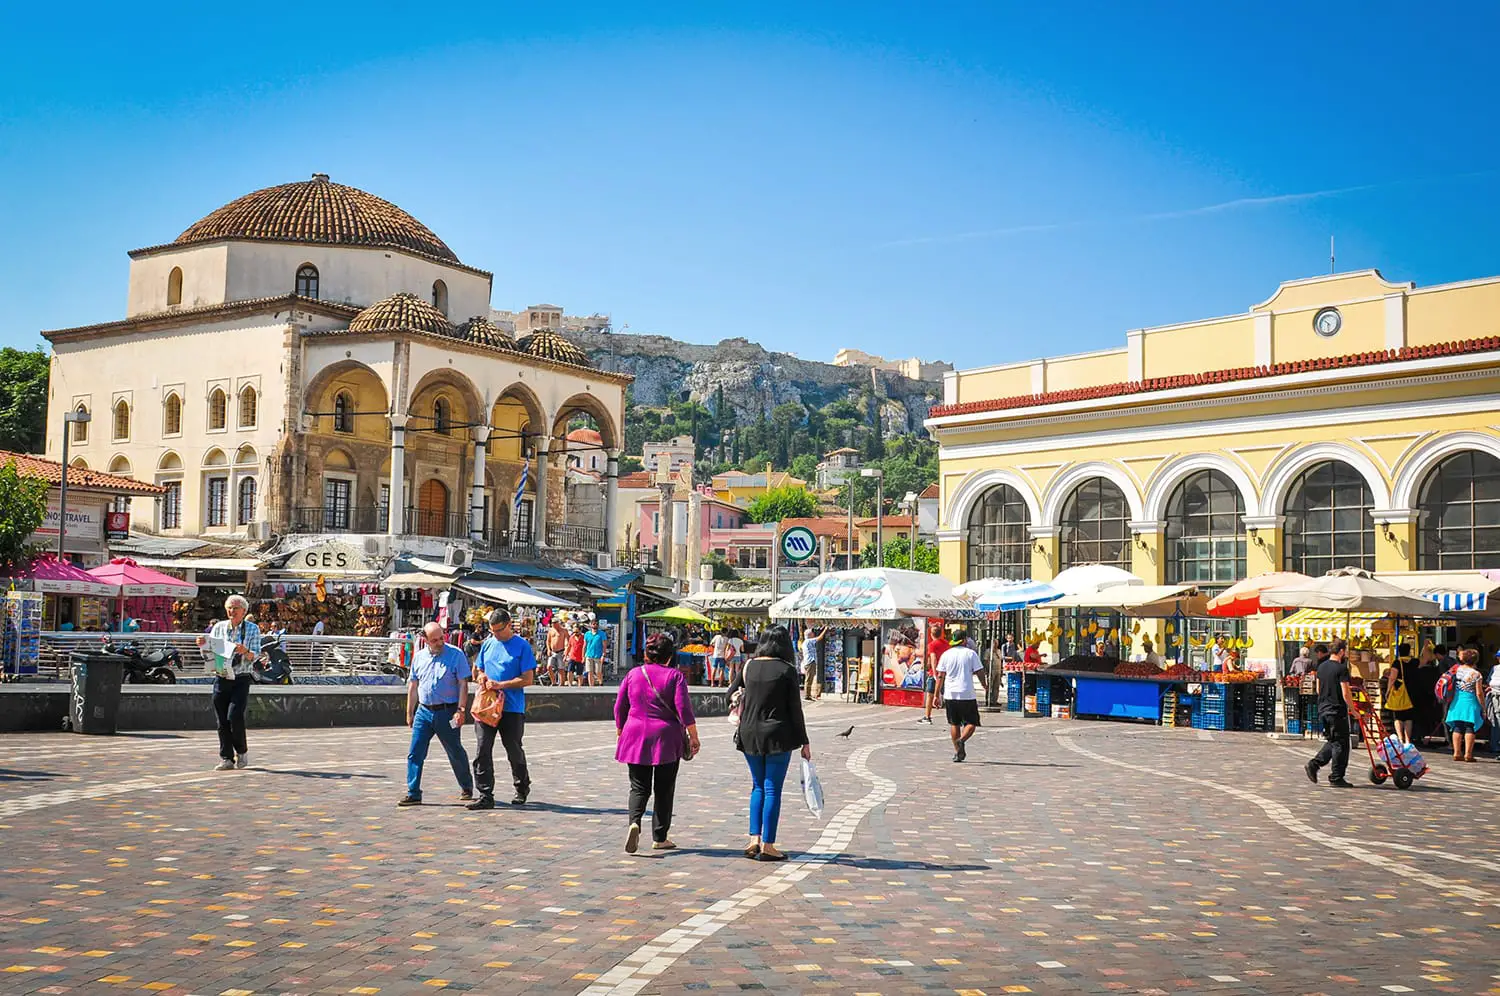 Οι άνθρωποι ψωνίζουν στο Μοναστηράκι, μια πλατεία υπαίθριων παζαριών στην παλιά πόλη της Αθήνας, Ελλάδα